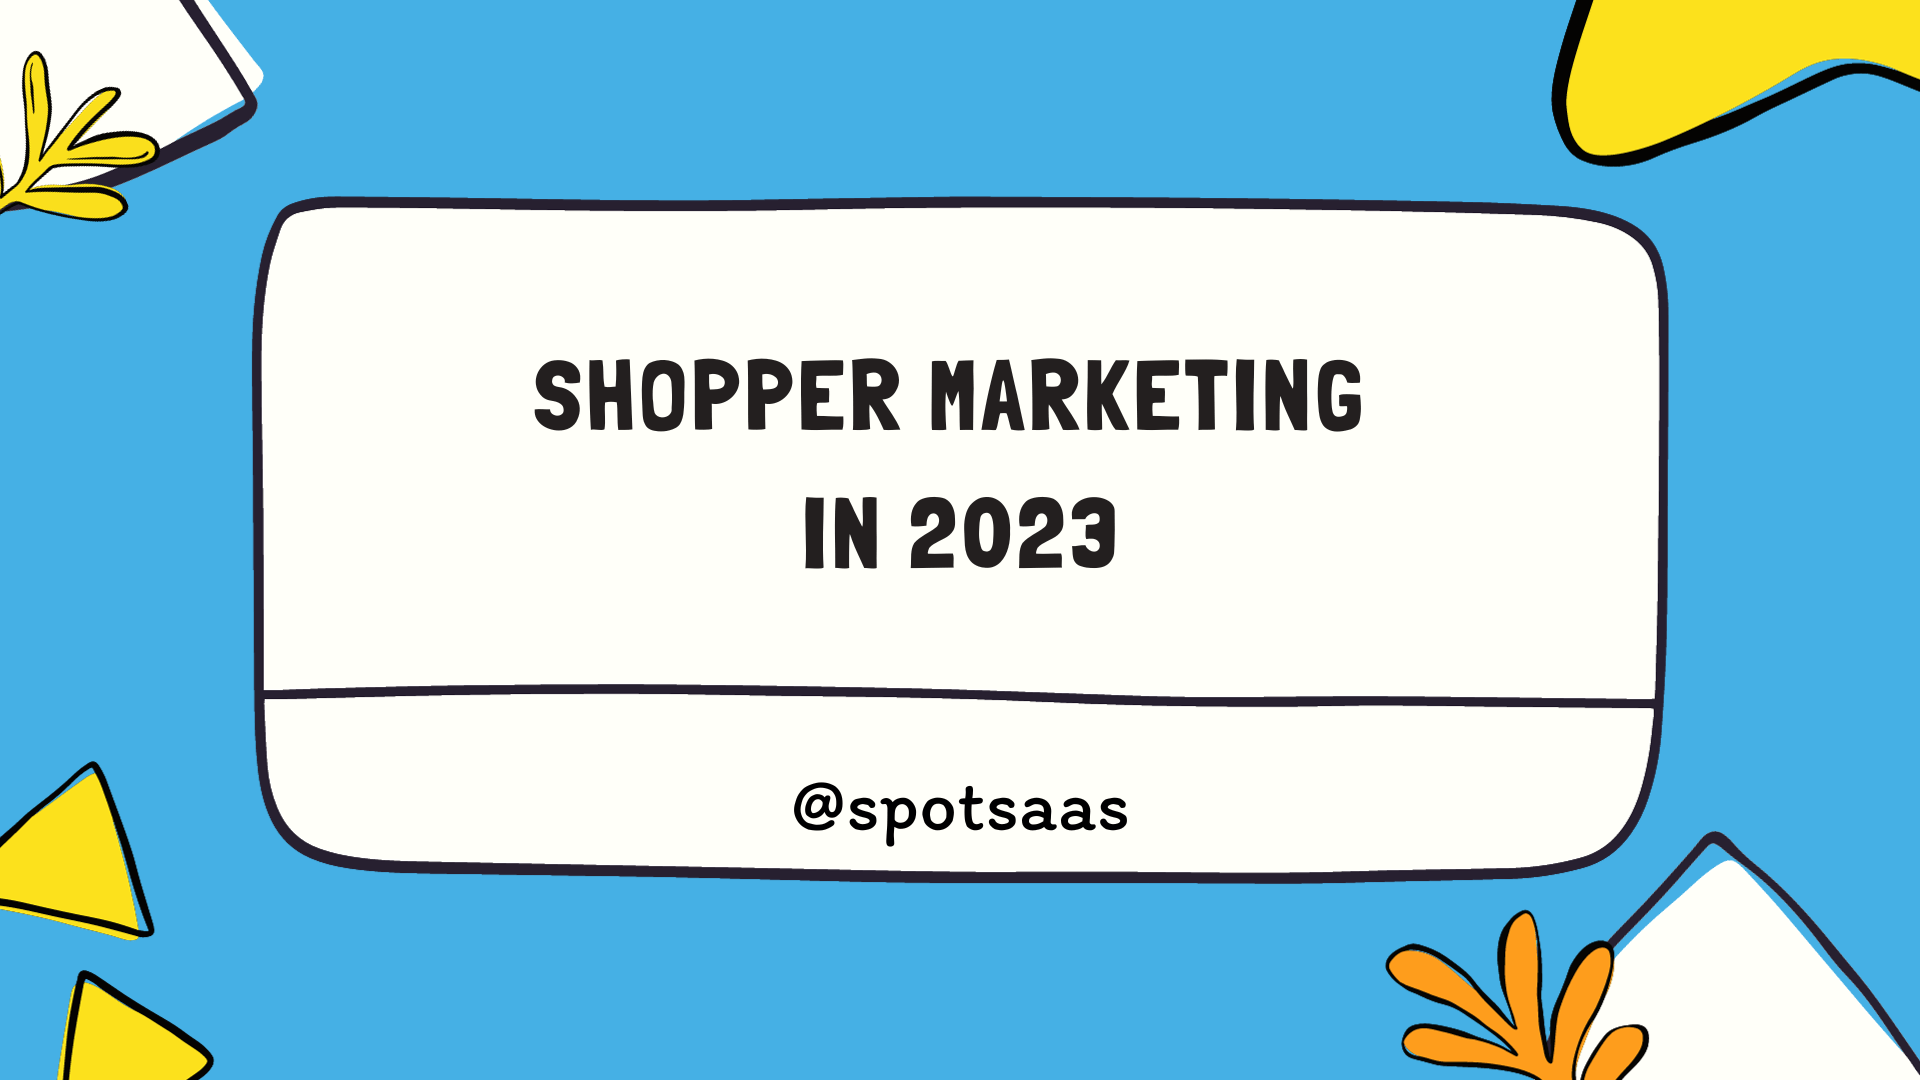 Shopper Marketing in 2023